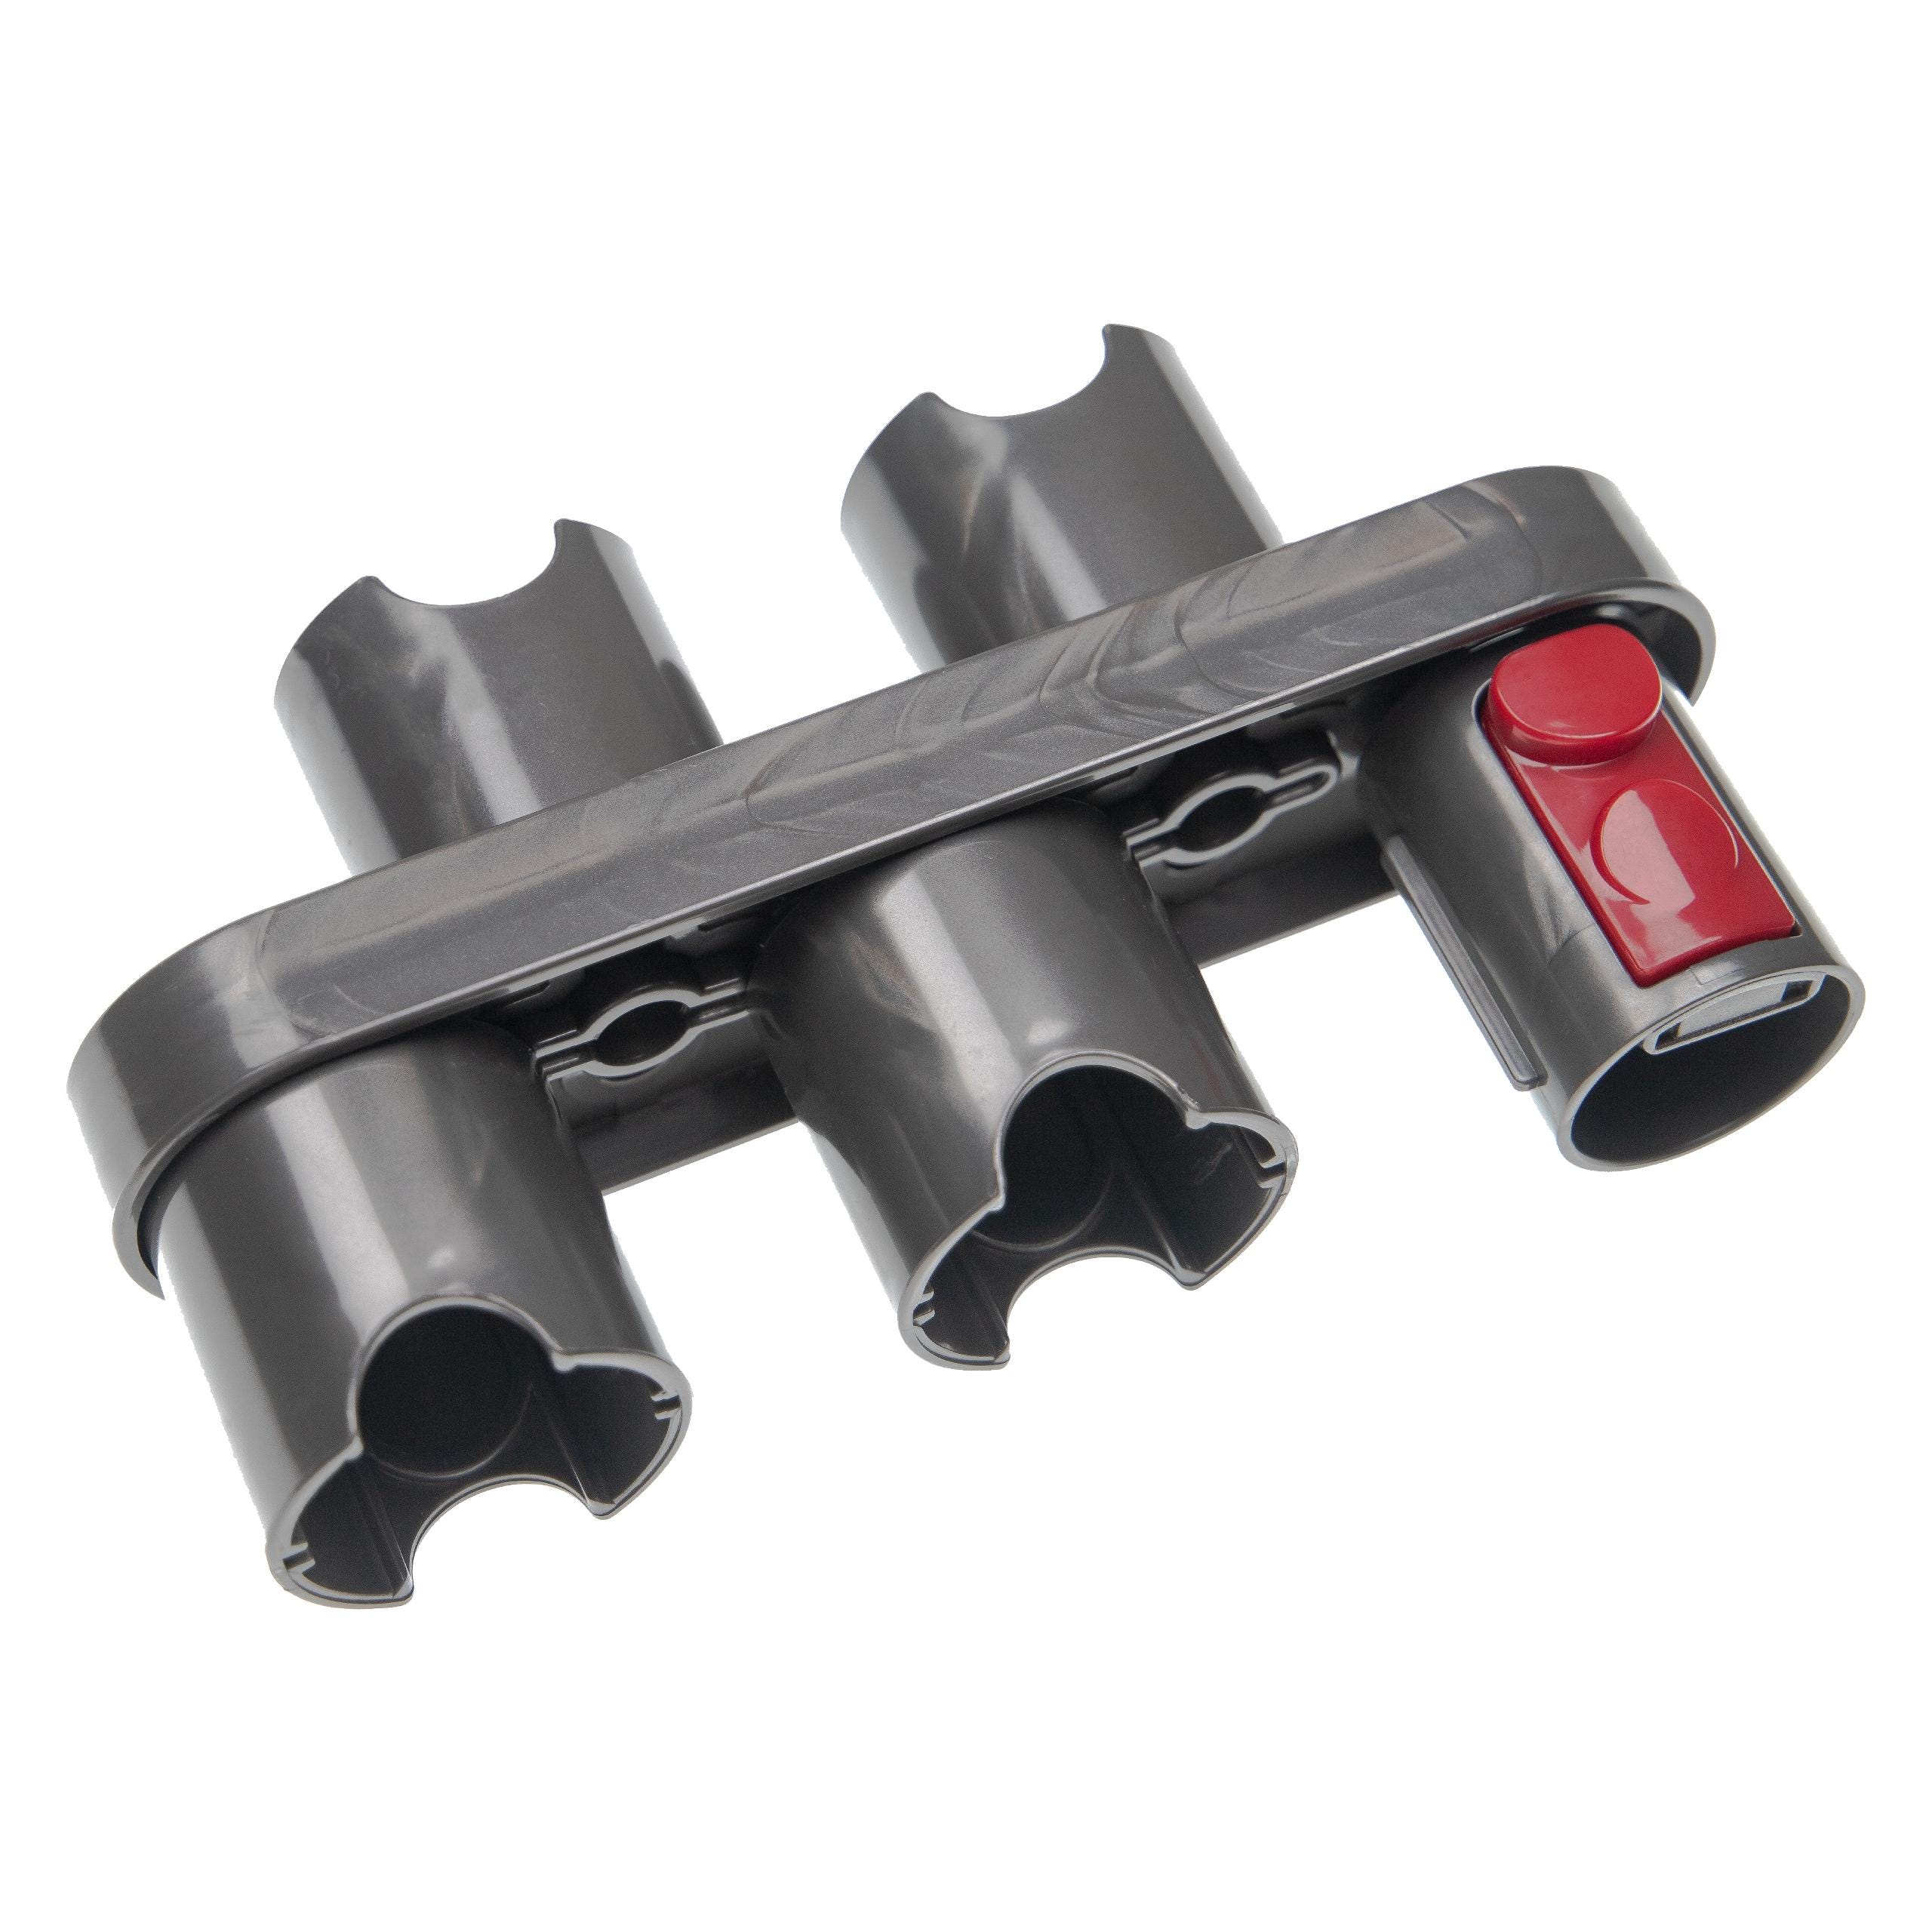 Vhbw porta-accessori compatibile con Dyson V15 Detect Absolute accessori da  aspirapolvere - Supporto, grigio / rosso, 17,3 x 4,8 x 10 cm